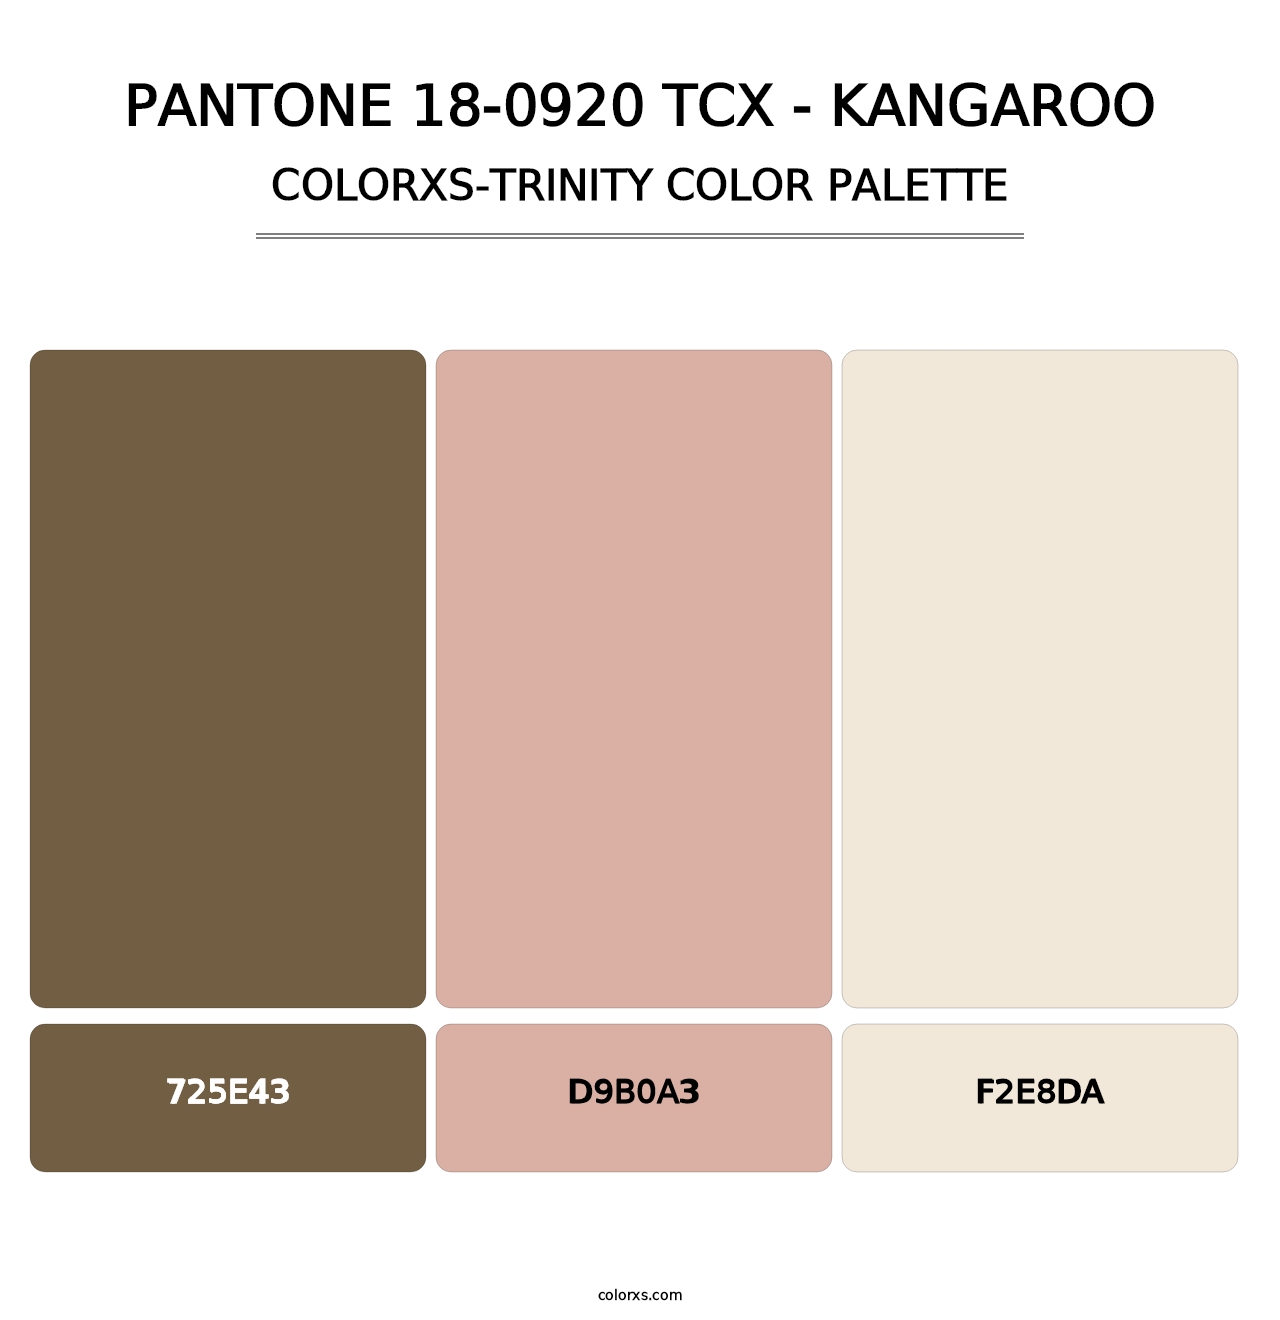 PANTONE 18-0920 TCX - Kangaroo - Colorxs Trinity Palette